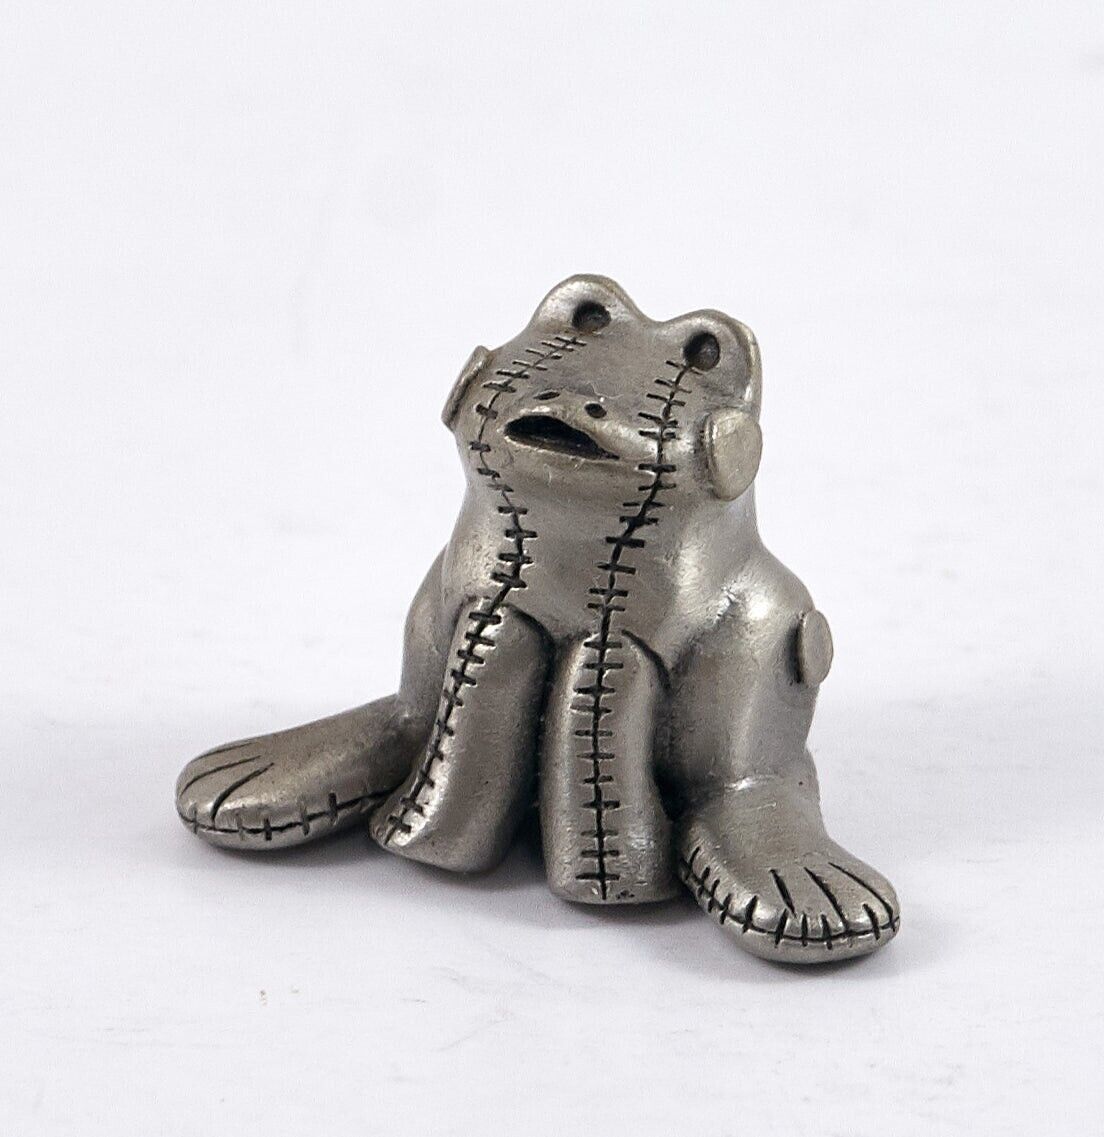 Primary image for Hudson Fine Pewter Stitched Frog Figurine #2622 1" Vintage 1993